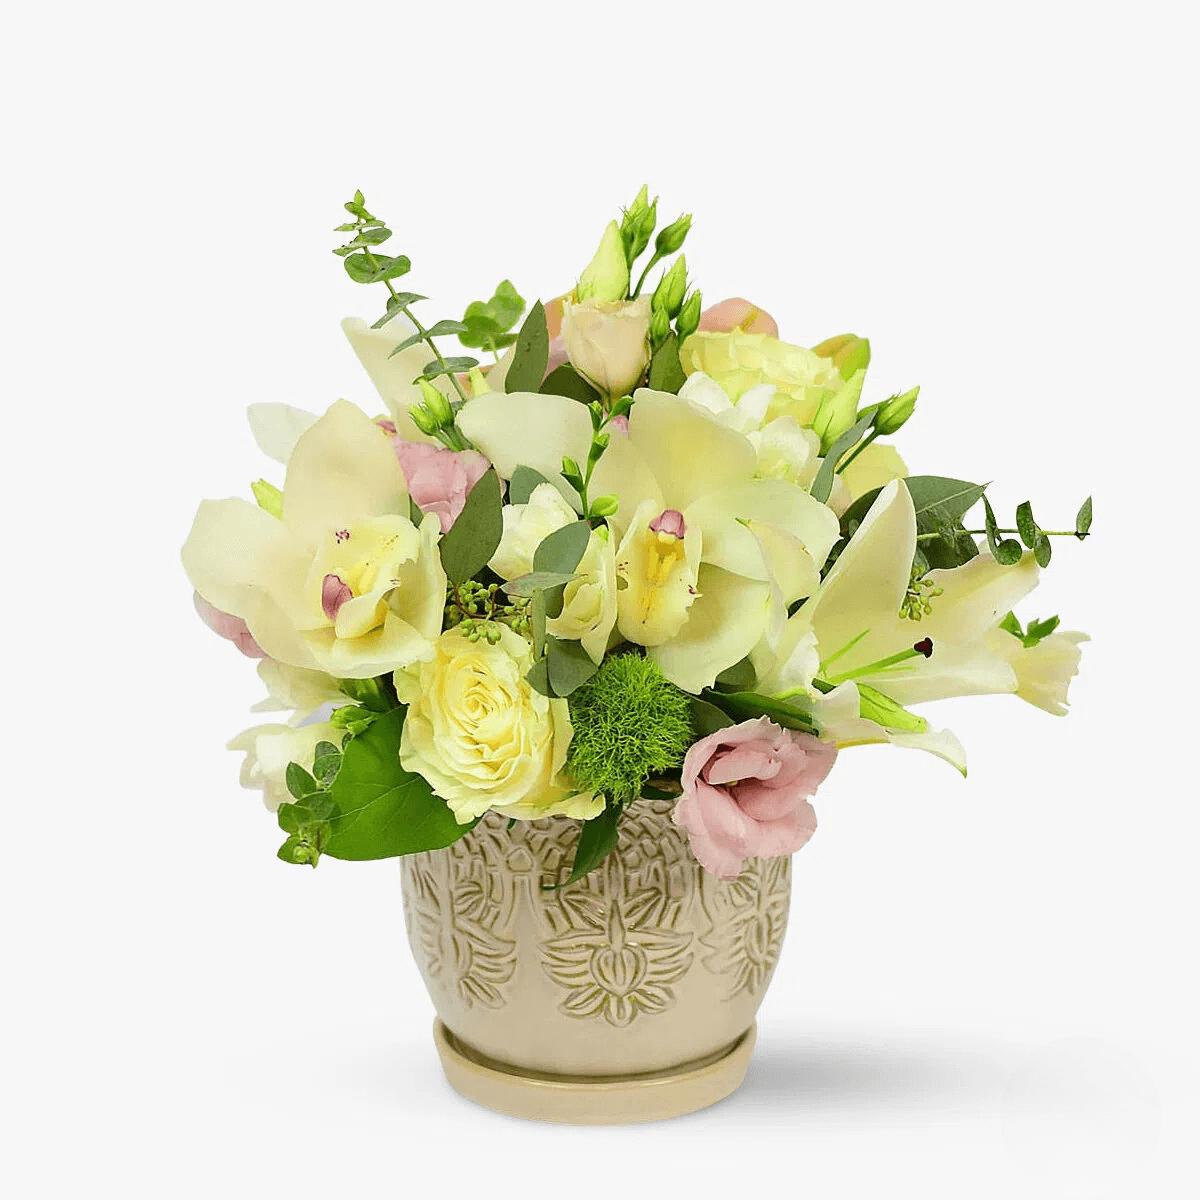 Aranjament floral – Suras delicat – Standard Aranjament